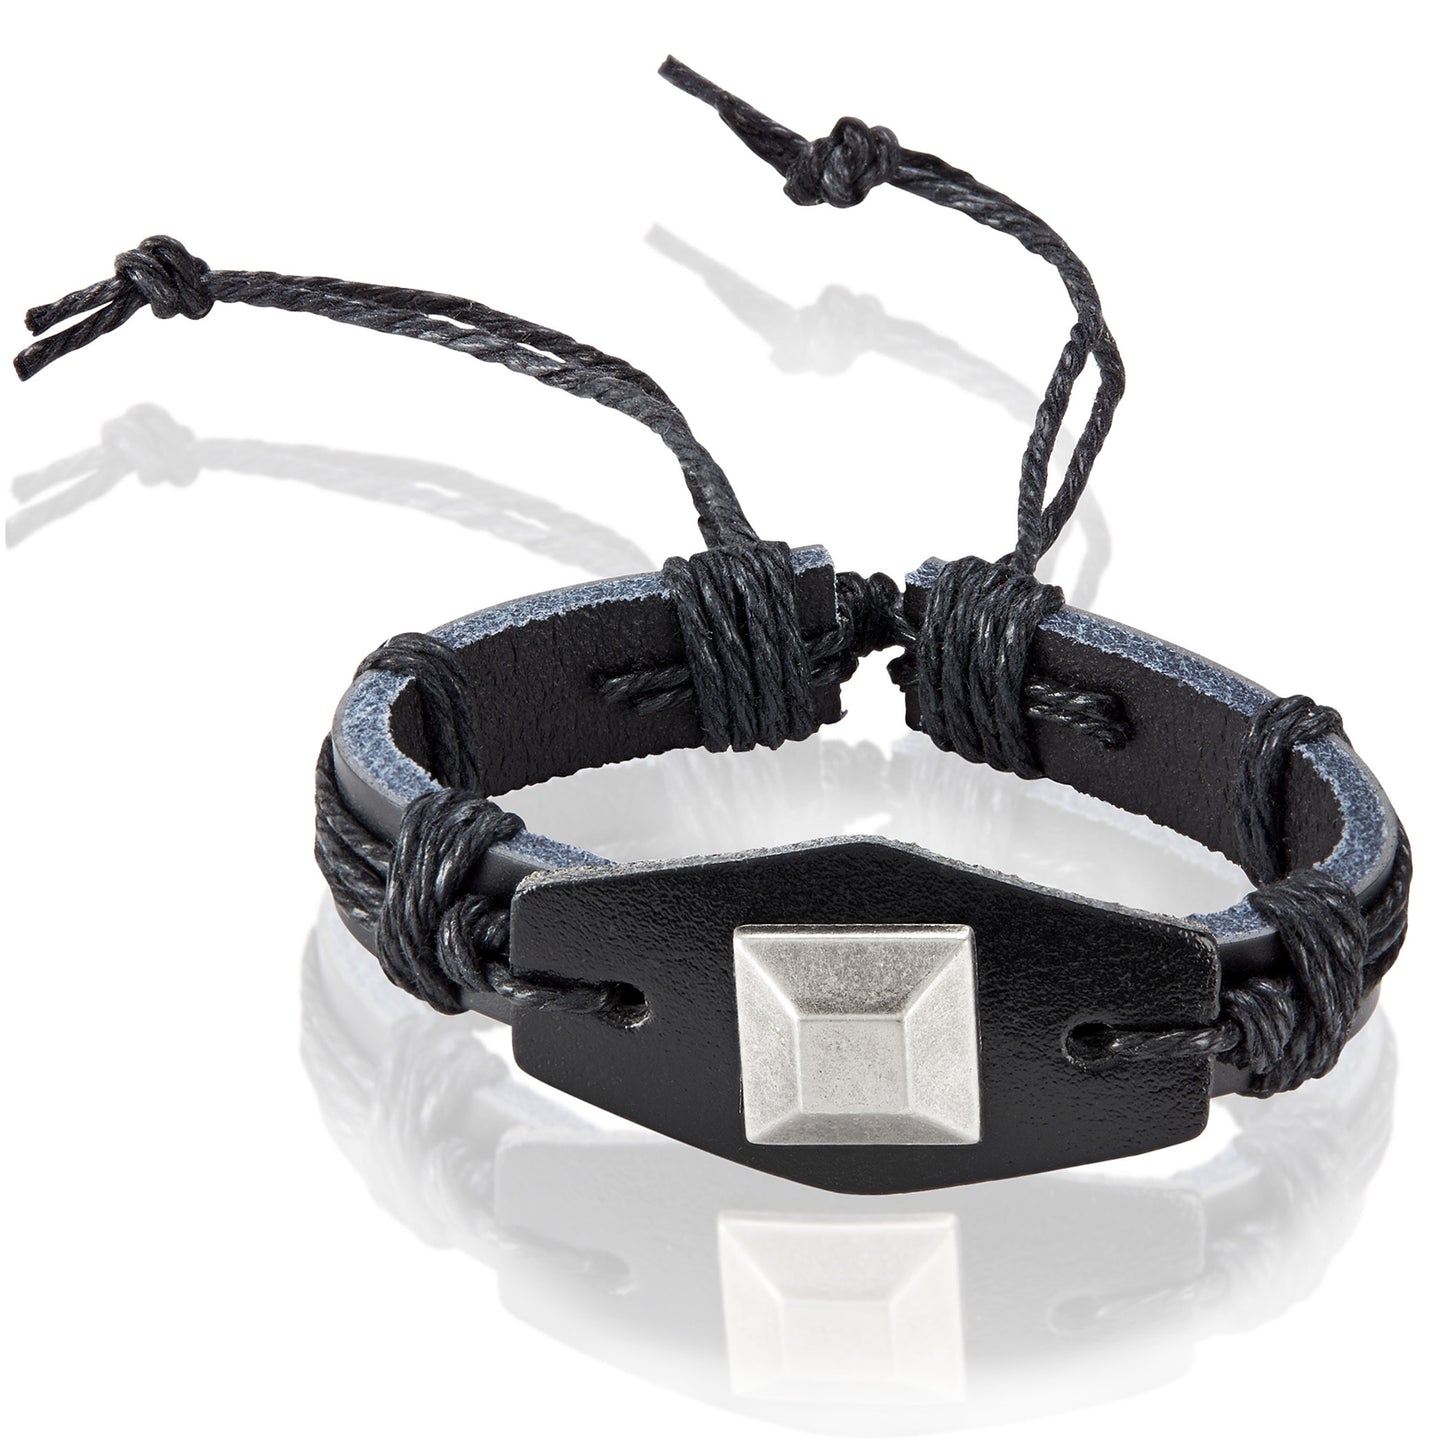 Men's Black Leather Square Stud Adjustable Bracelet